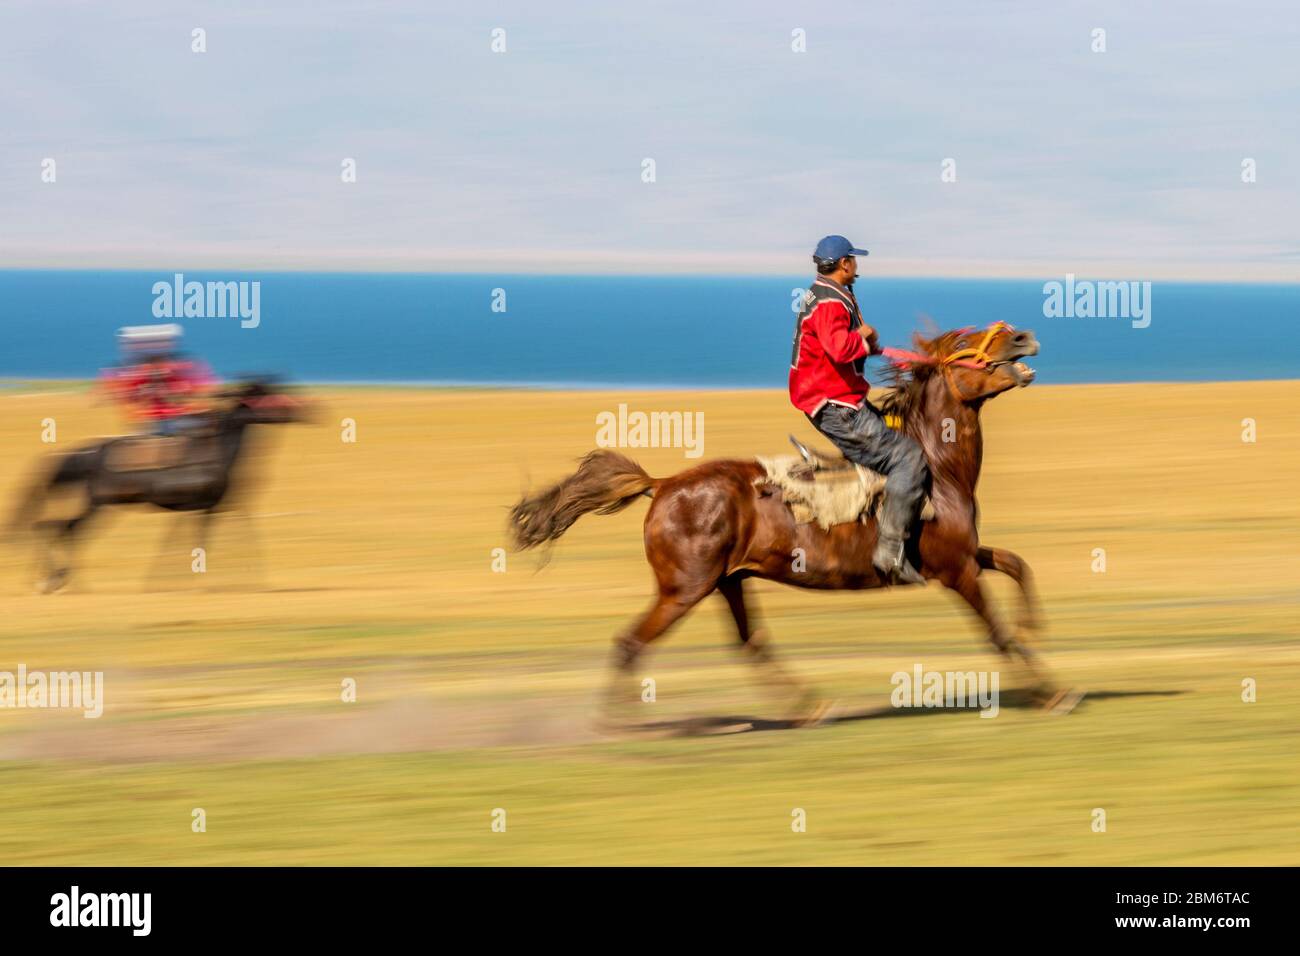 Buzkaschi ist ein traditionelles Reiterspiel in Afghanistan und anderen persisch- und turksprachigen Teilen Zentralasiens. In Kirgisistan ist es ein N Stock Photo